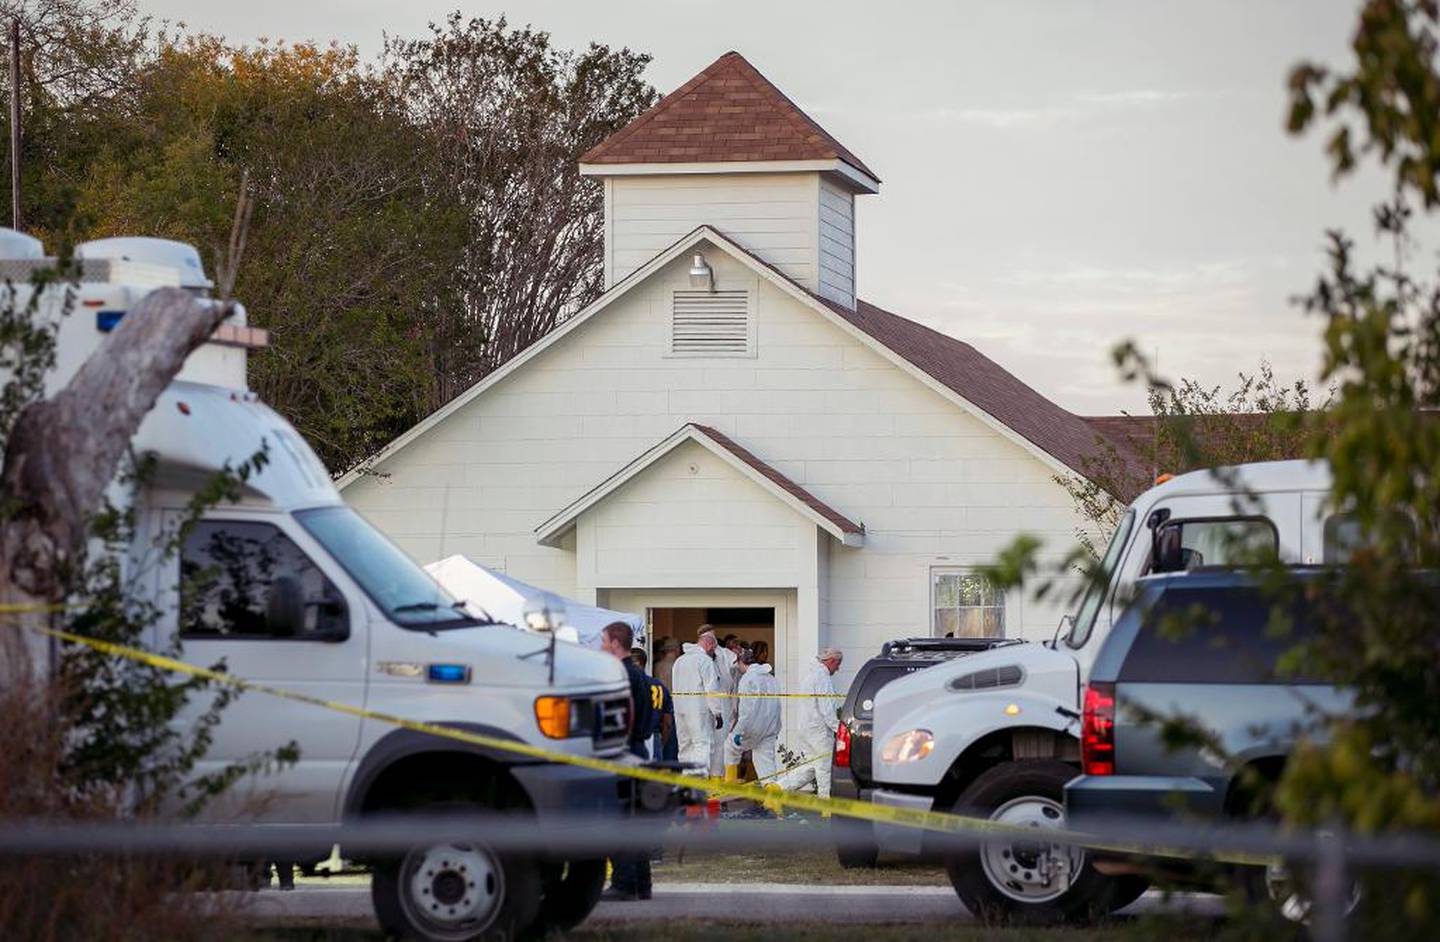 Gjerningsmannen angrep First Baptist Church i landsbyen Sutherland Springs iført skuddsikker vest og et angrepsvåpen. Totalt ble 26 mennesker drept.